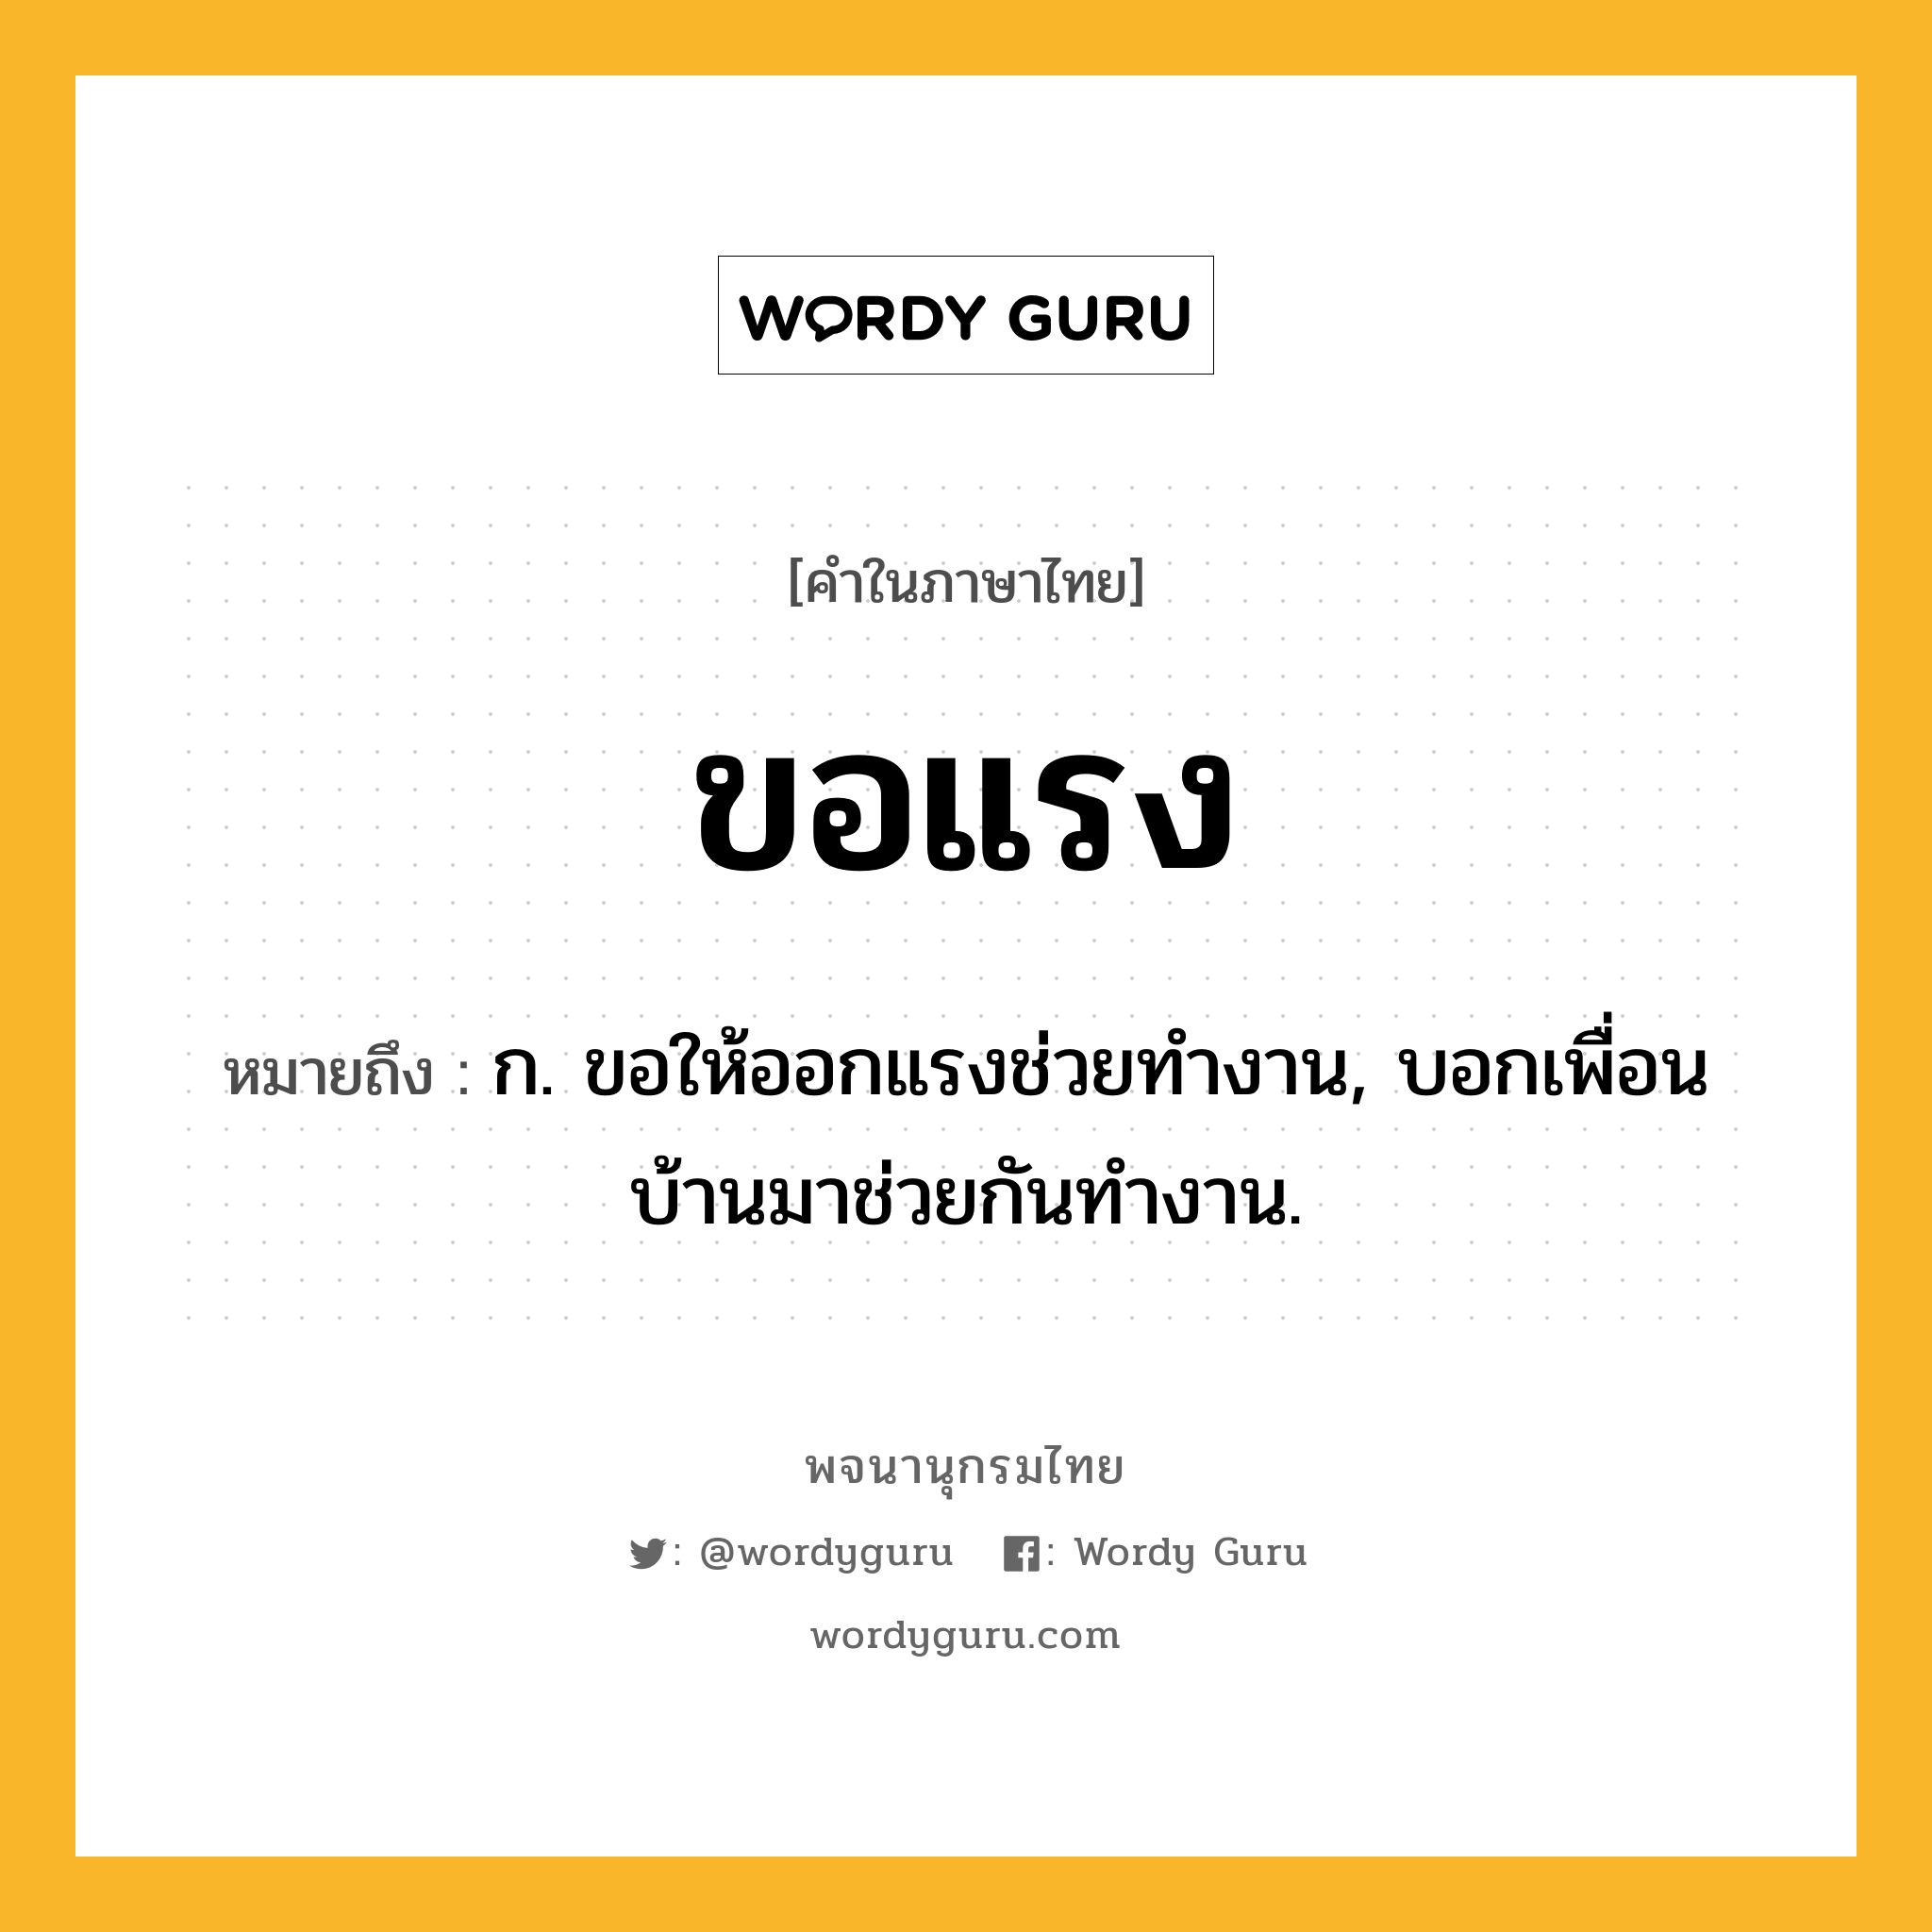 ขอแรง หมายถึงอะไร?, คำในภาษาไทย ขอแรง หมายถึง ก. ขอให้ออกแรงช่วยทำงาน, บอกเพื่อนบ้านมาช่วยกันทำงาน.